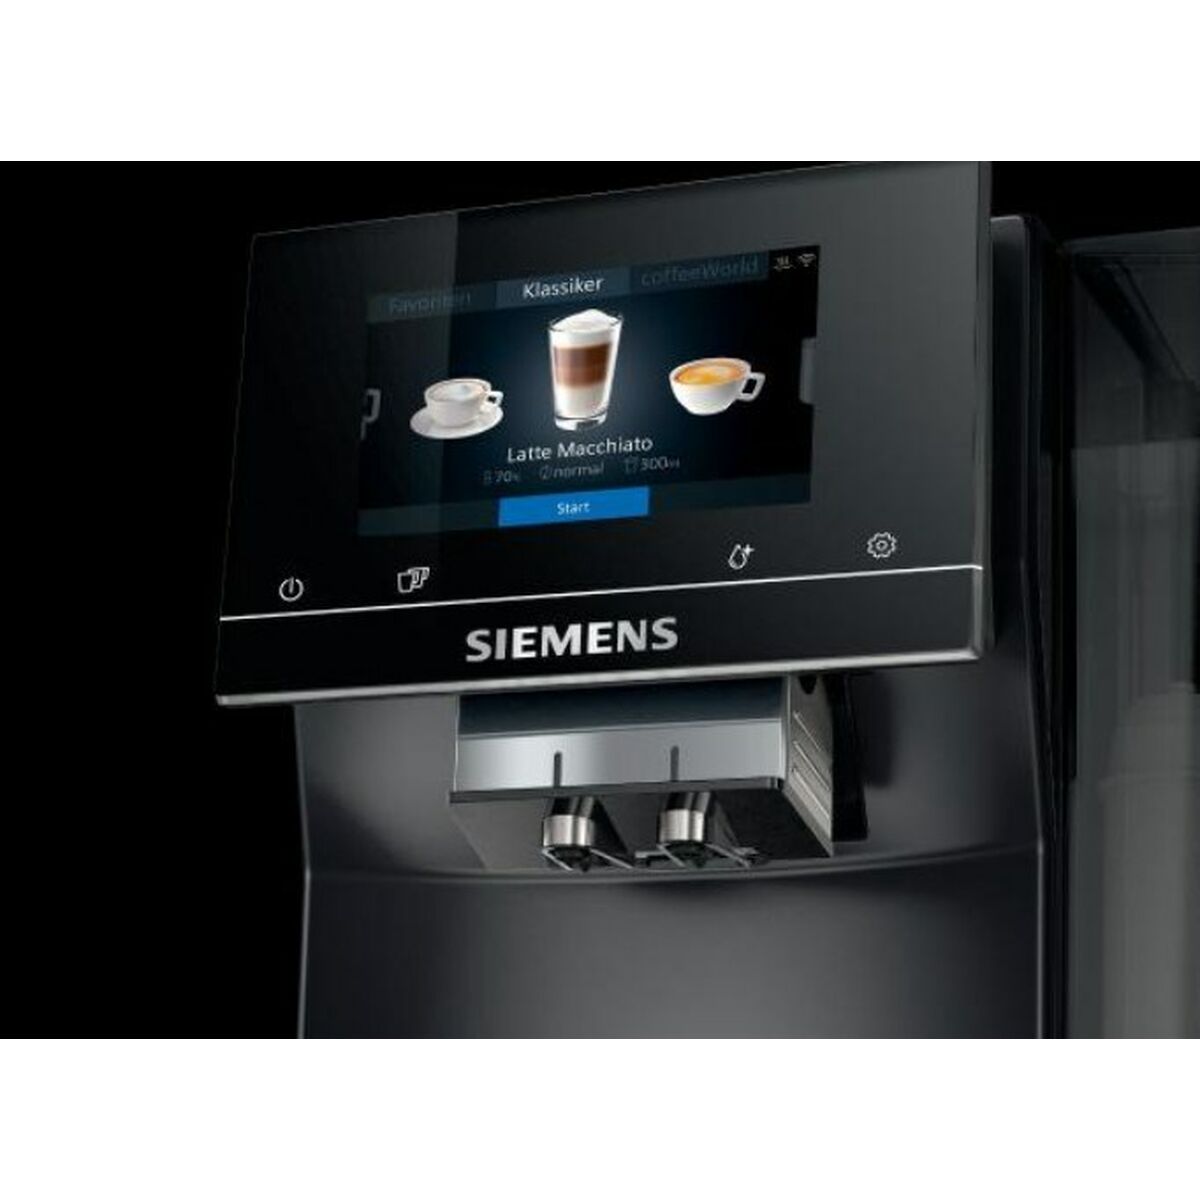 Kafijas automāts Siemens AG TP703R09 Melns 1500 W 19 bar 2,4 L